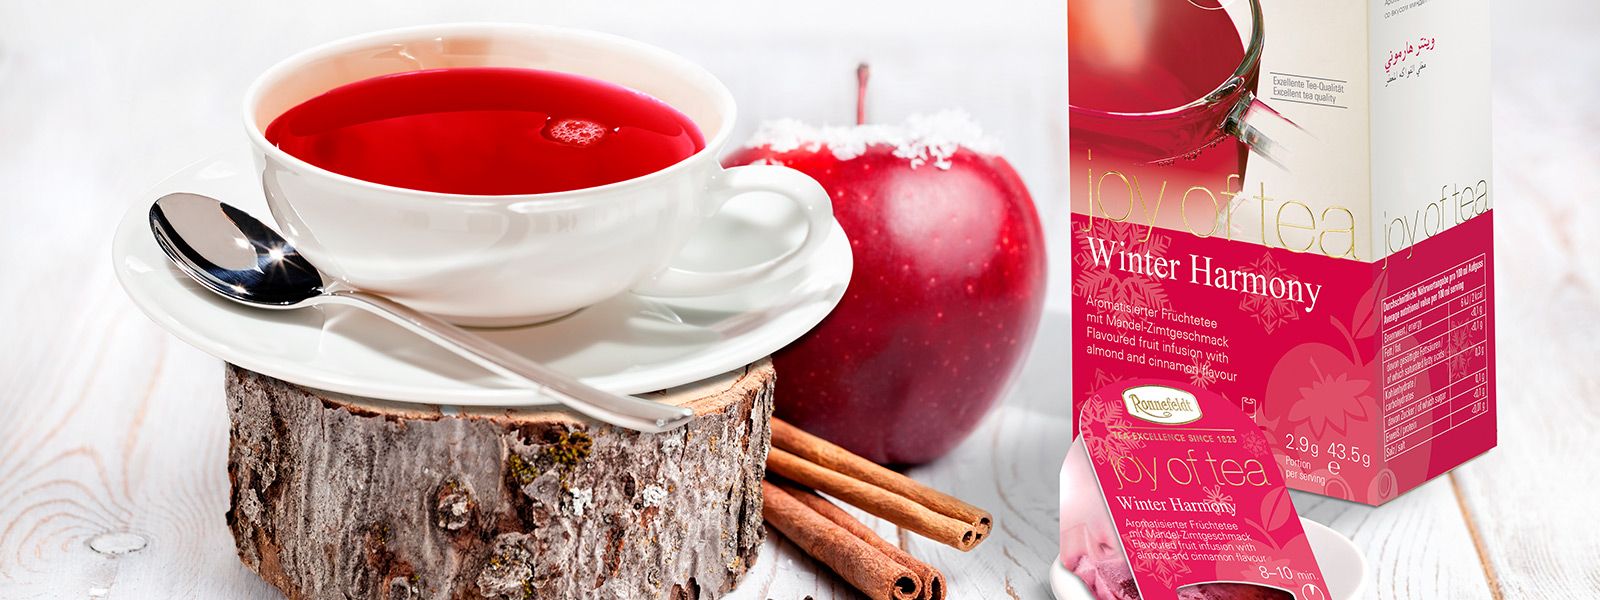 Tasse Tee auf einem Baumstamm im Hintergrund ein Apfel und eine Teeverpackung